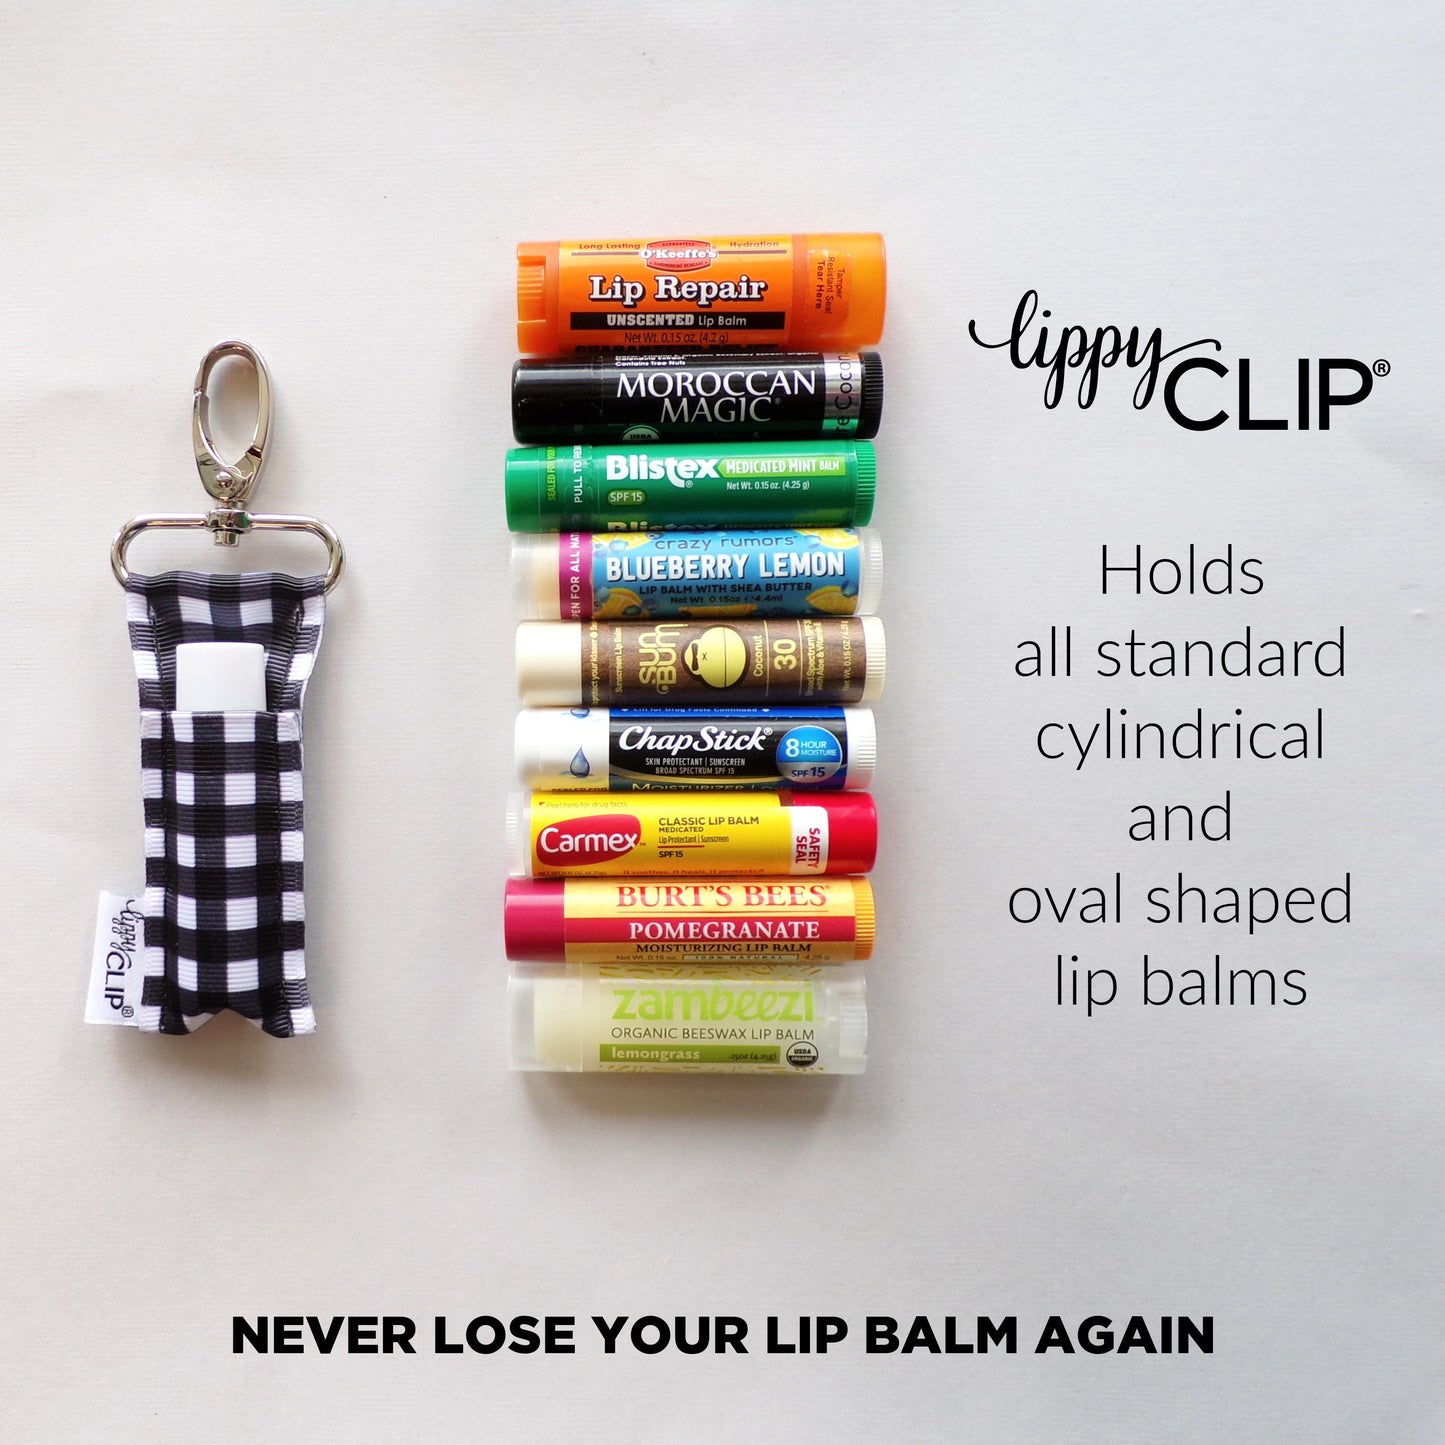 Hibiscus LippyClip® Lip Balm Holder